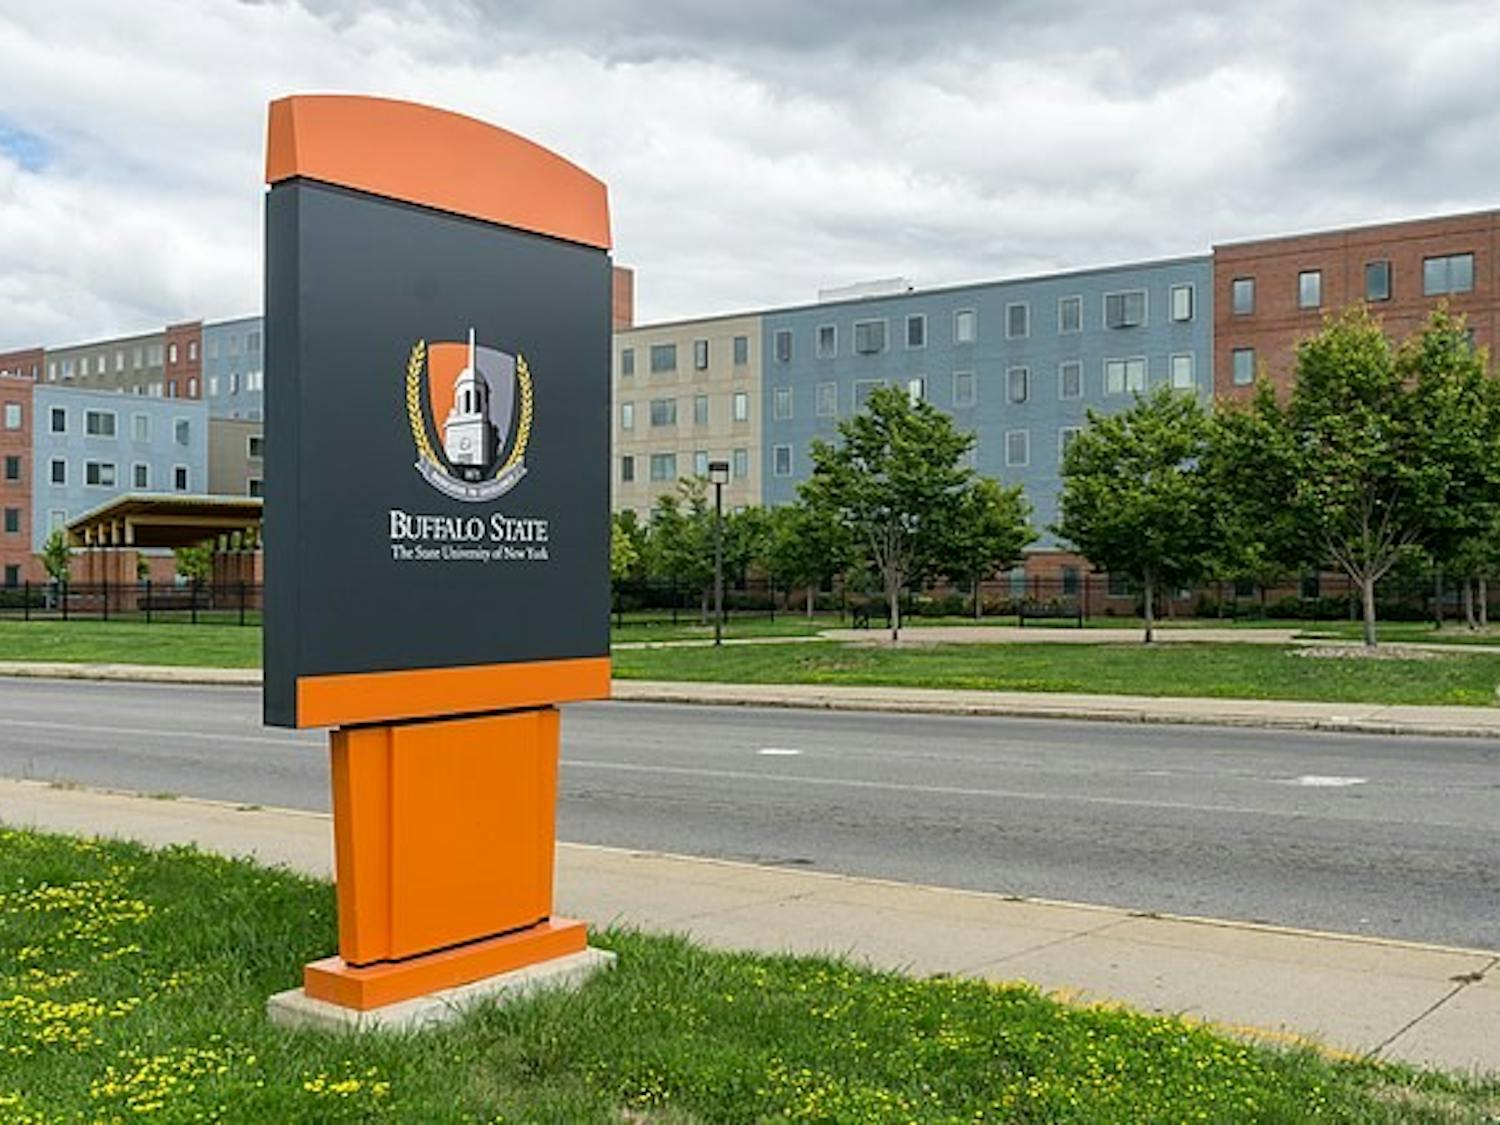 Buffalo State University celebrated its name change on Tuesday.